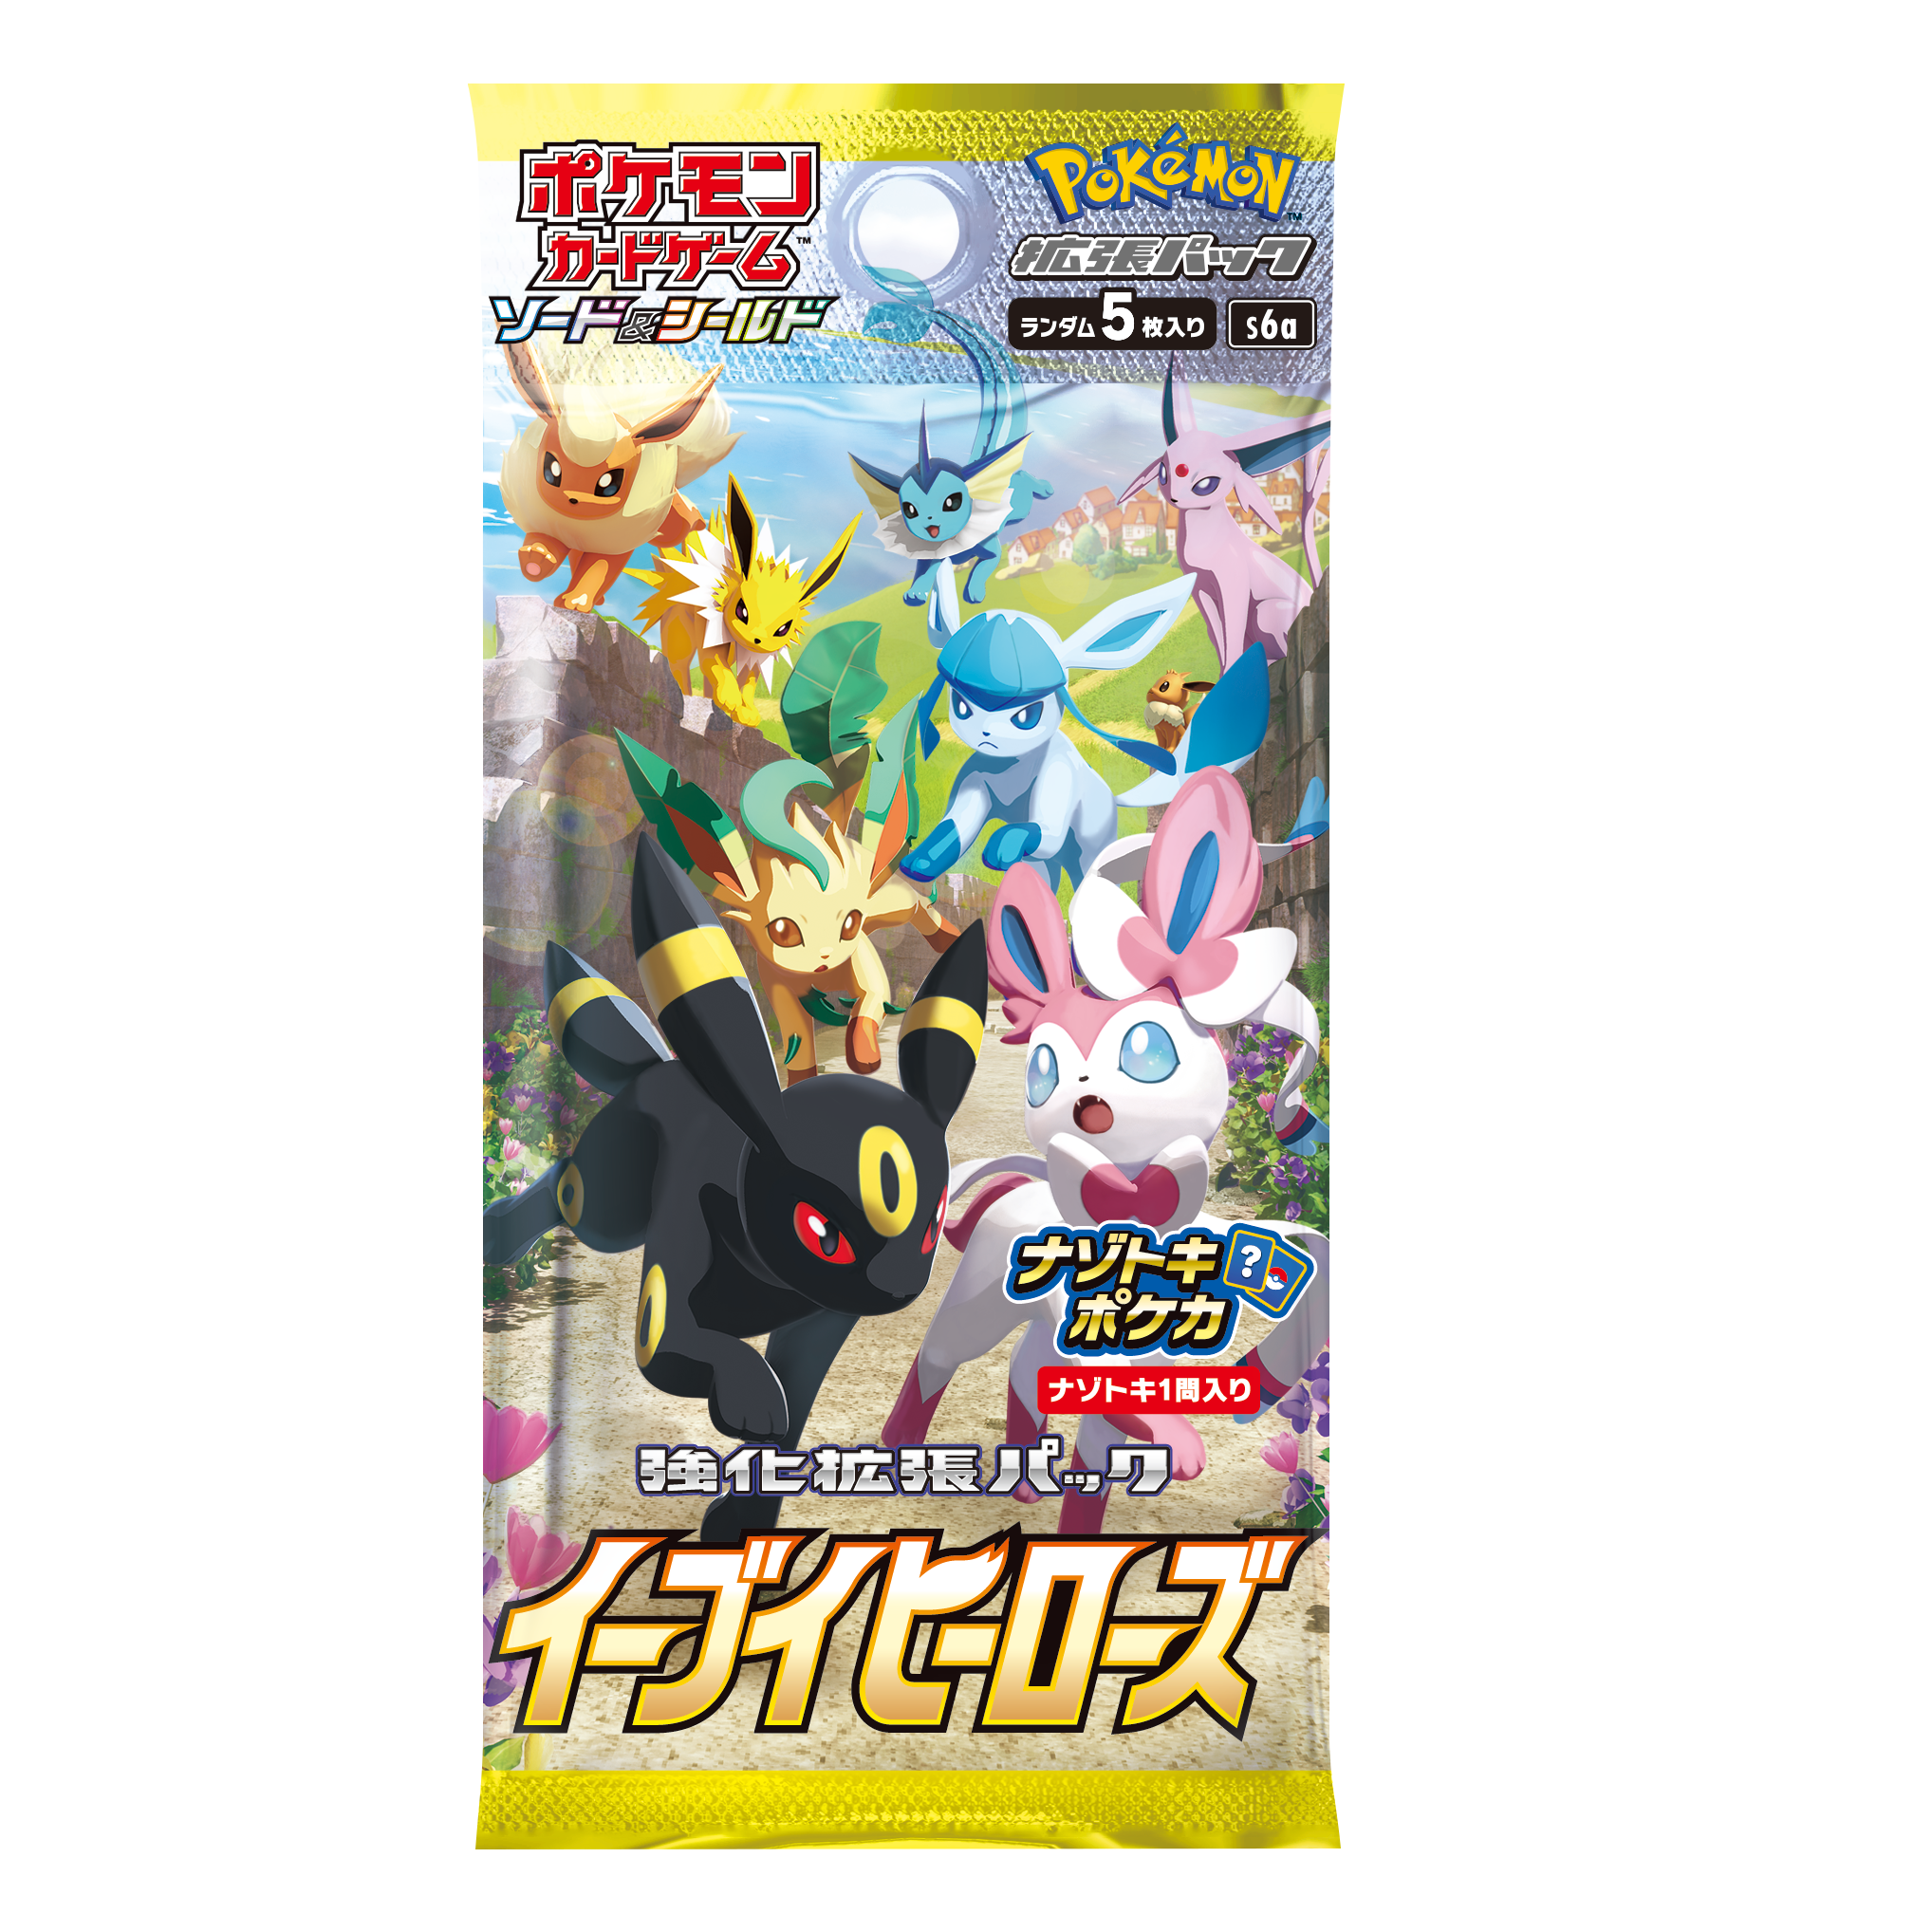 Cartes Pokémon Épée et Bouclier "Eevee Heroes" [S6A] (booster japonais)--0